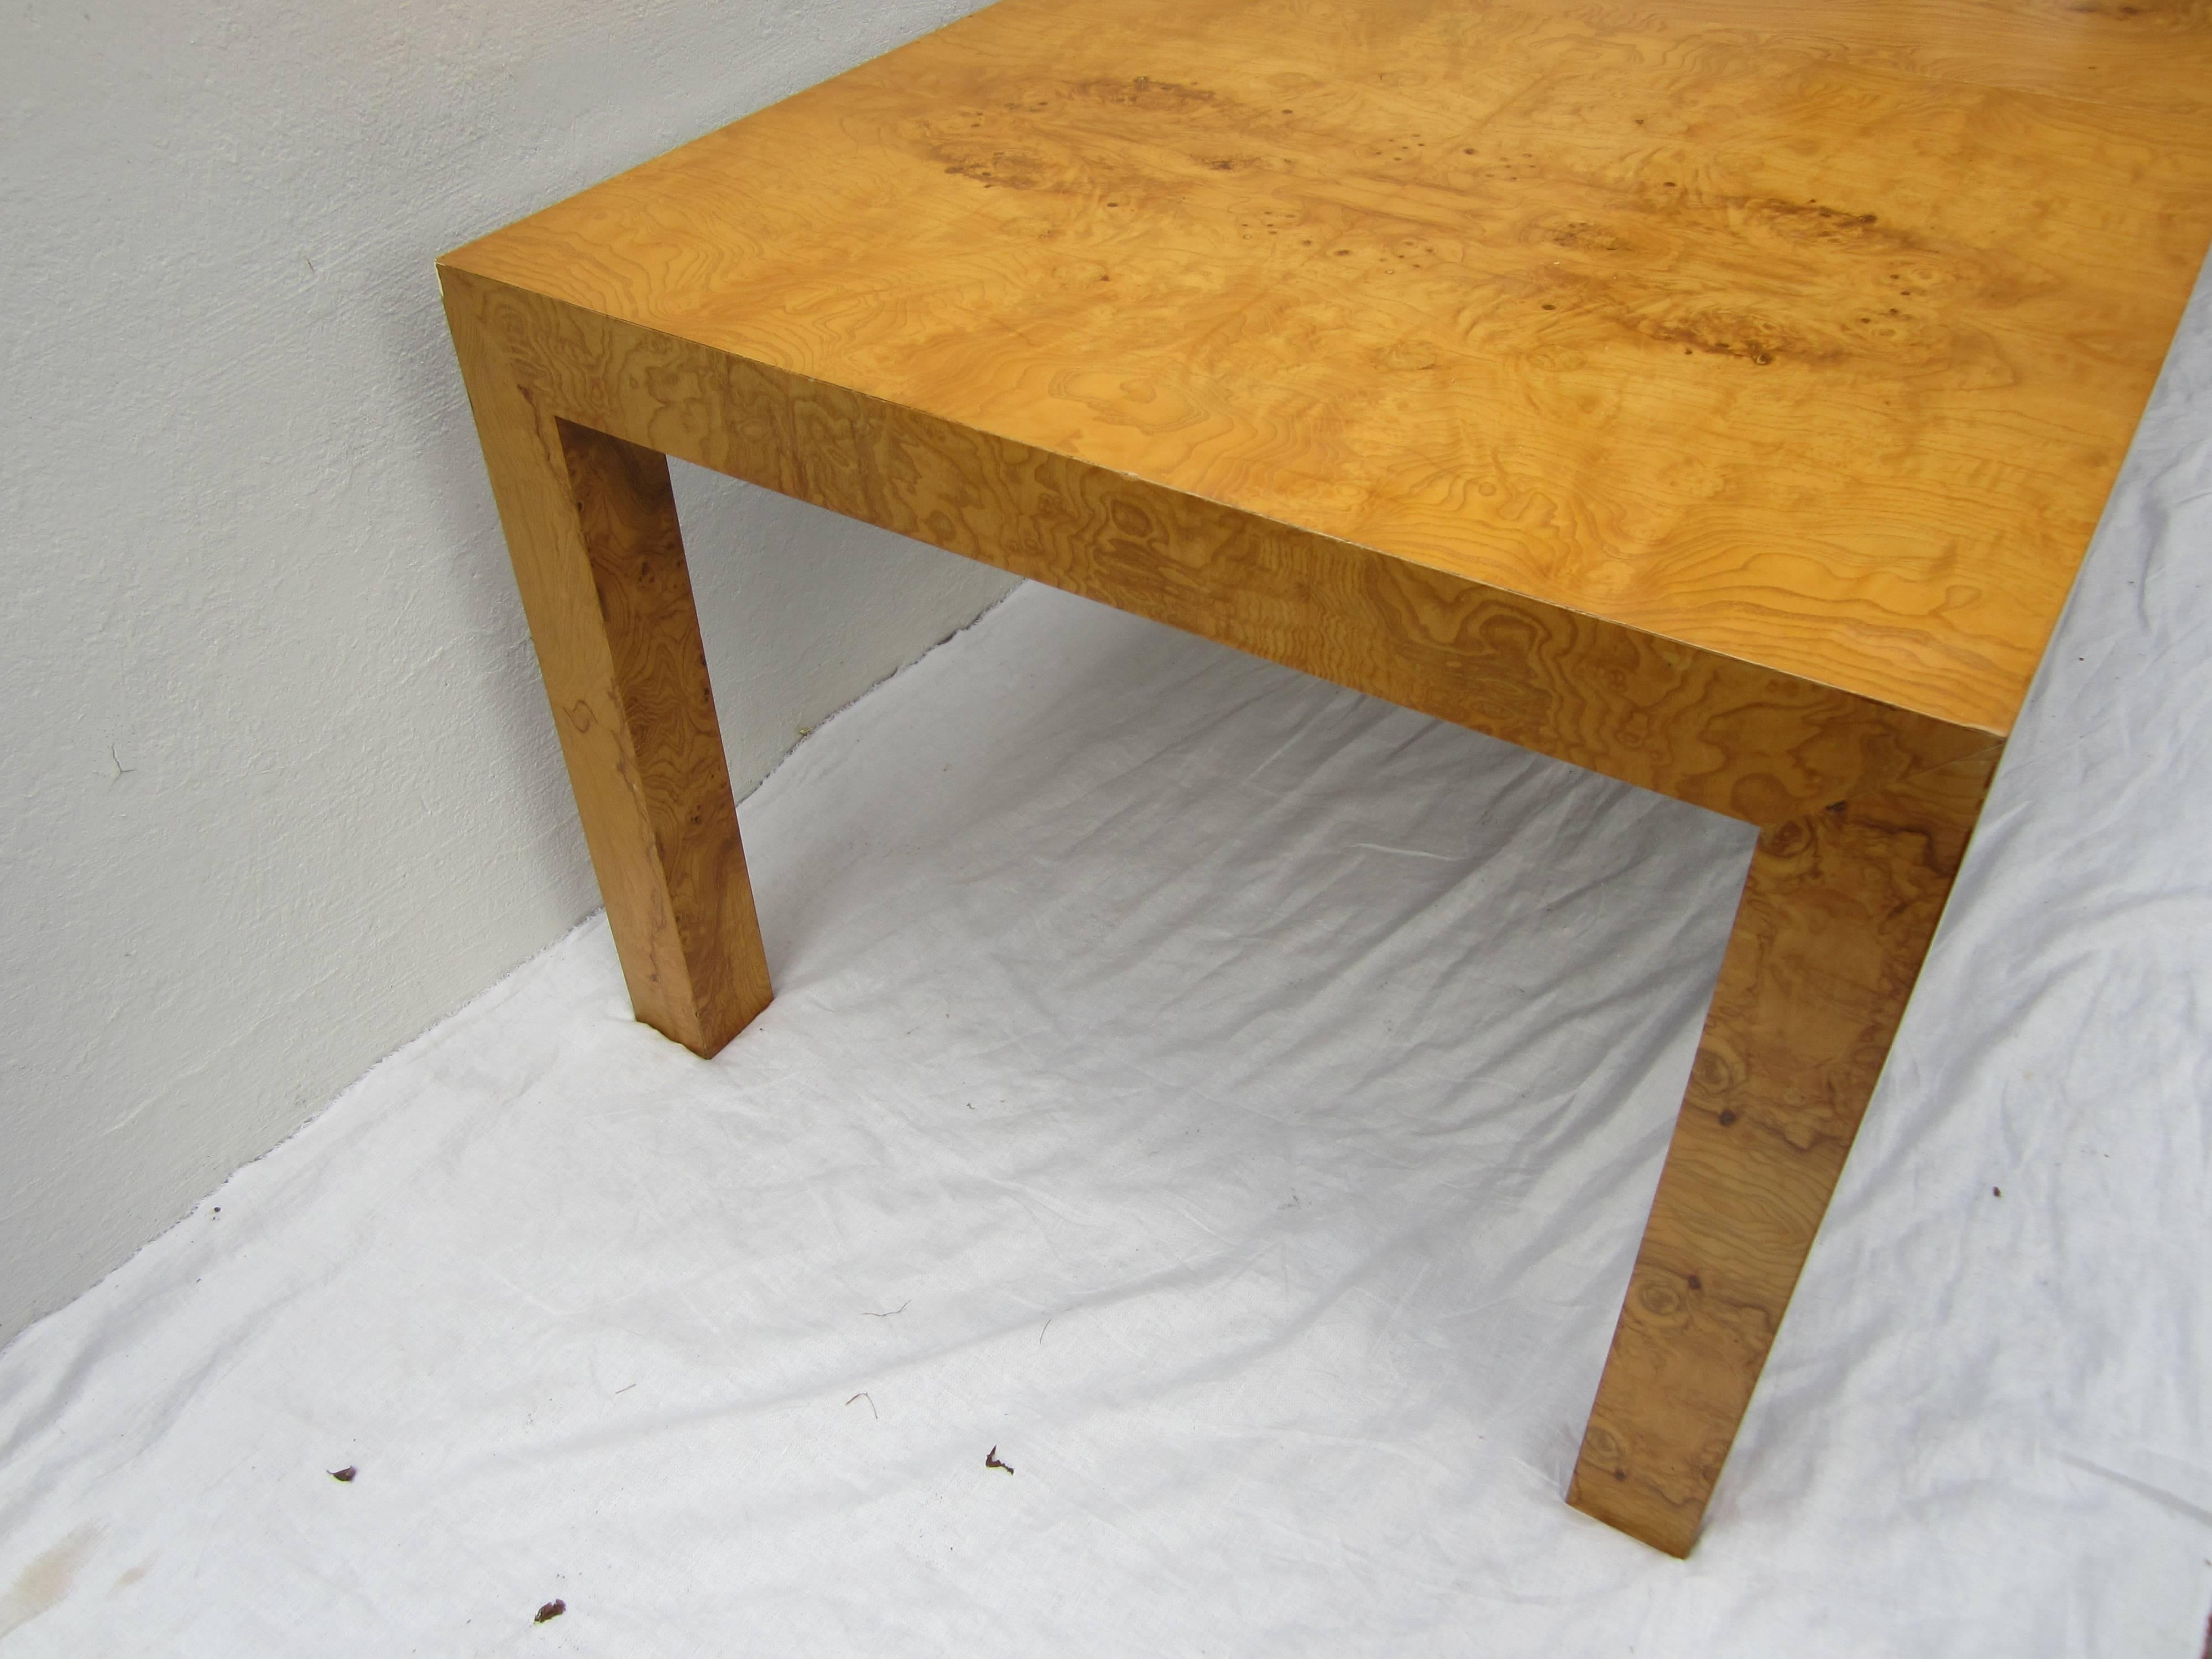 Milo Baughman burl wood veneer extension dining table. Measures: 66